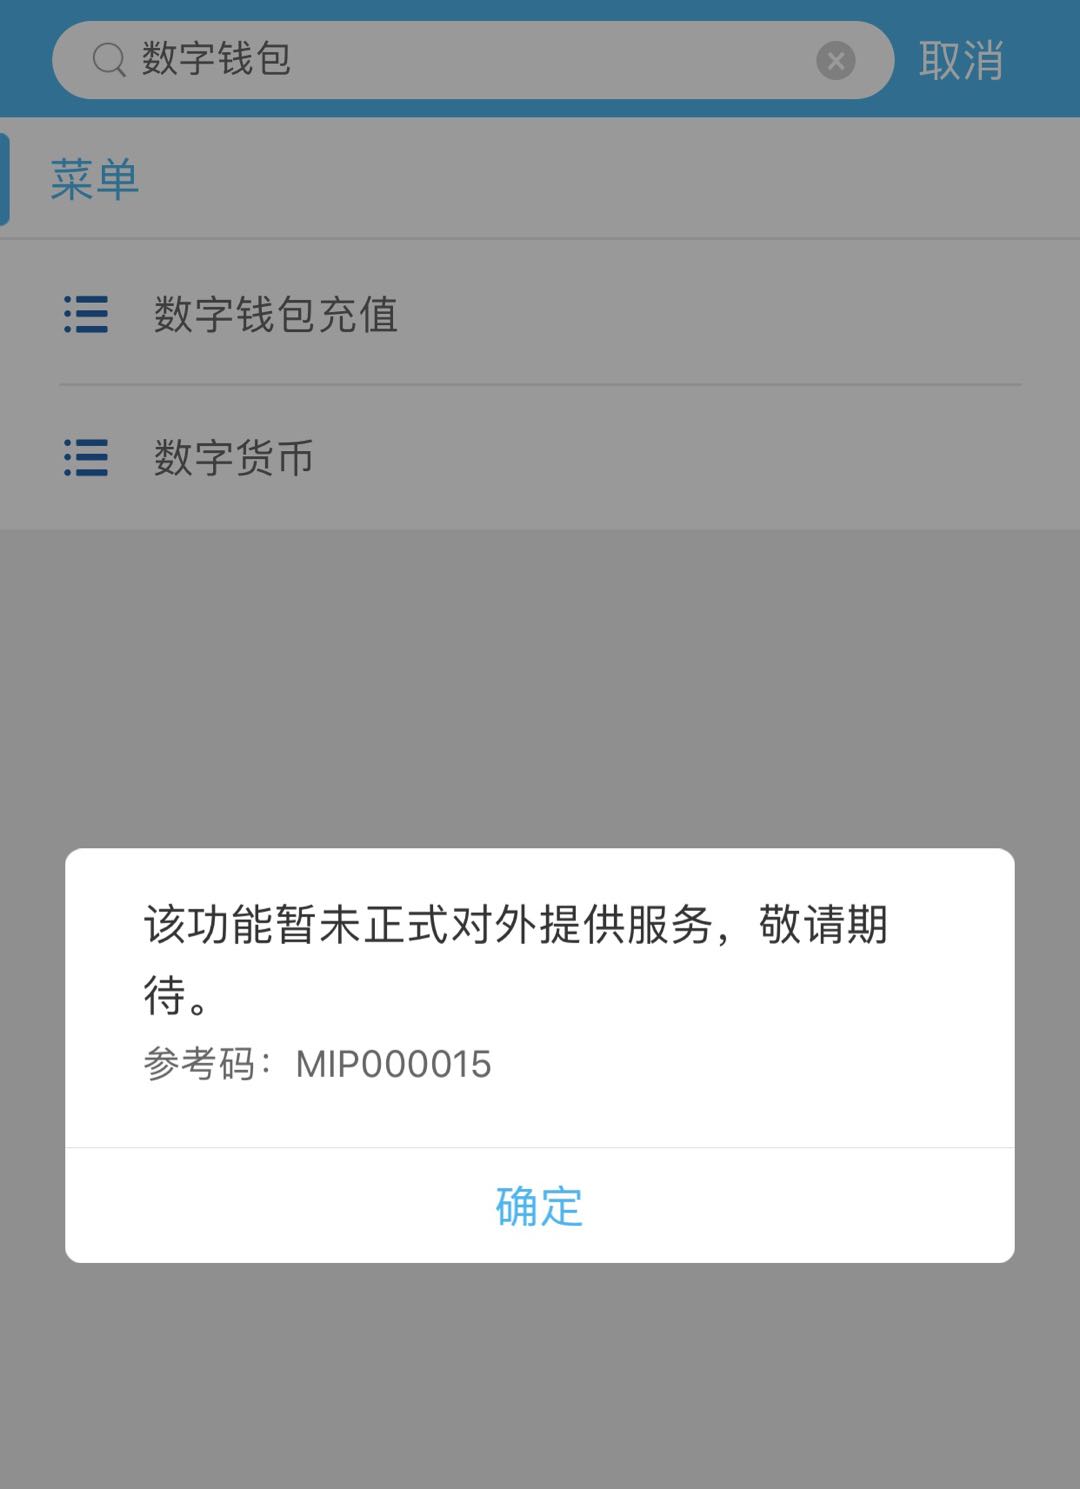 imtoken钱包限制中国用户-imtoken钱包宣布将限制中国用户使用钱包的应用程序